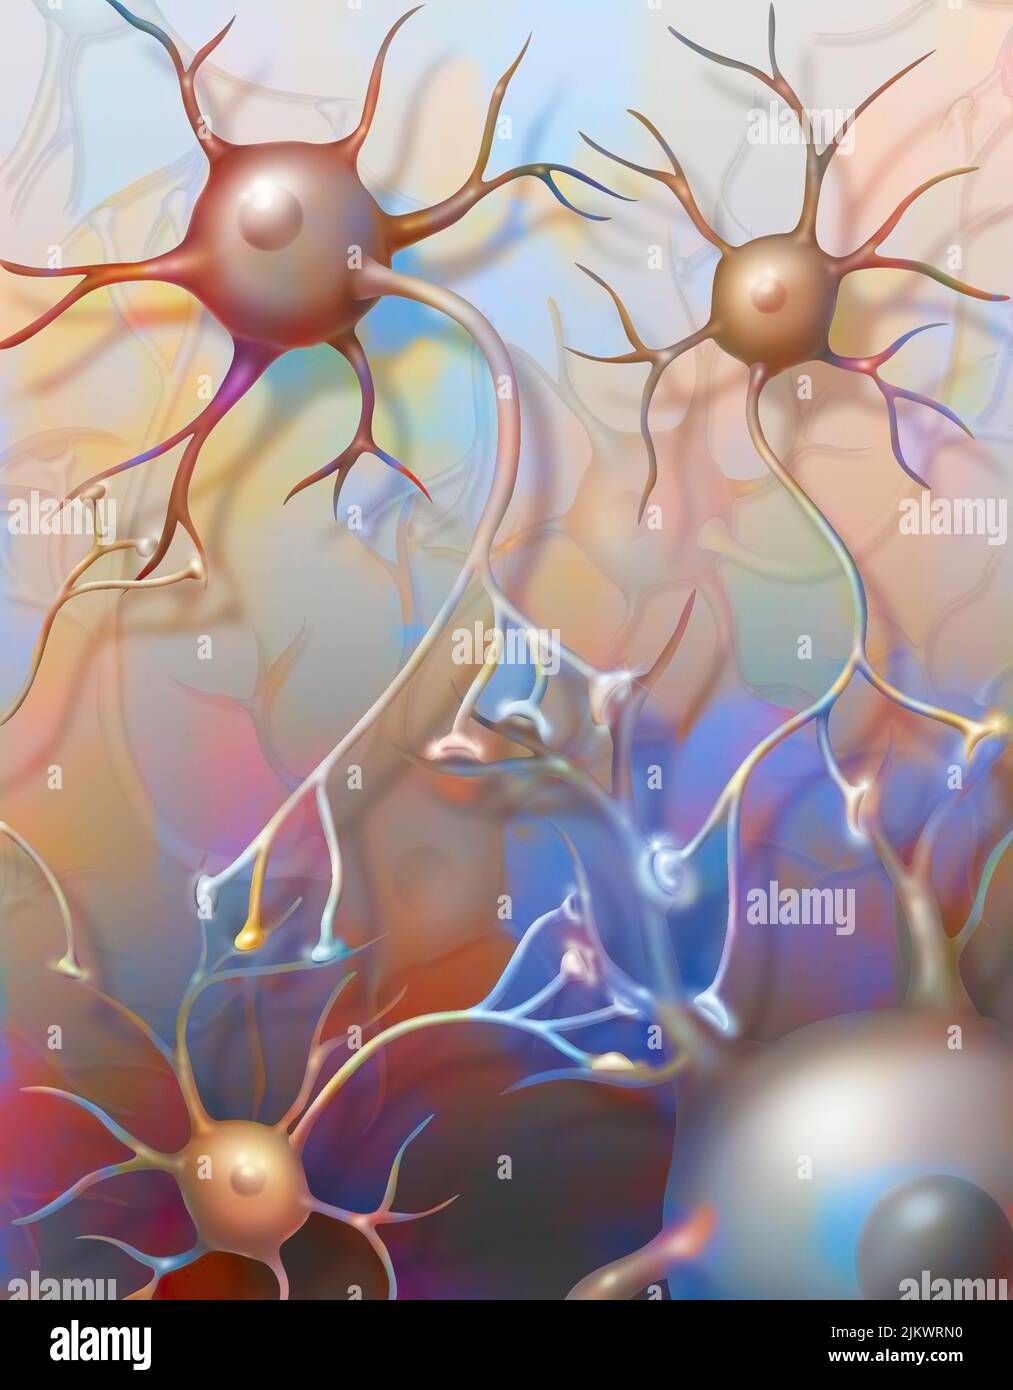 Neurones connectés montrant la transmission des impulsions nerveuses. Banque D'Images